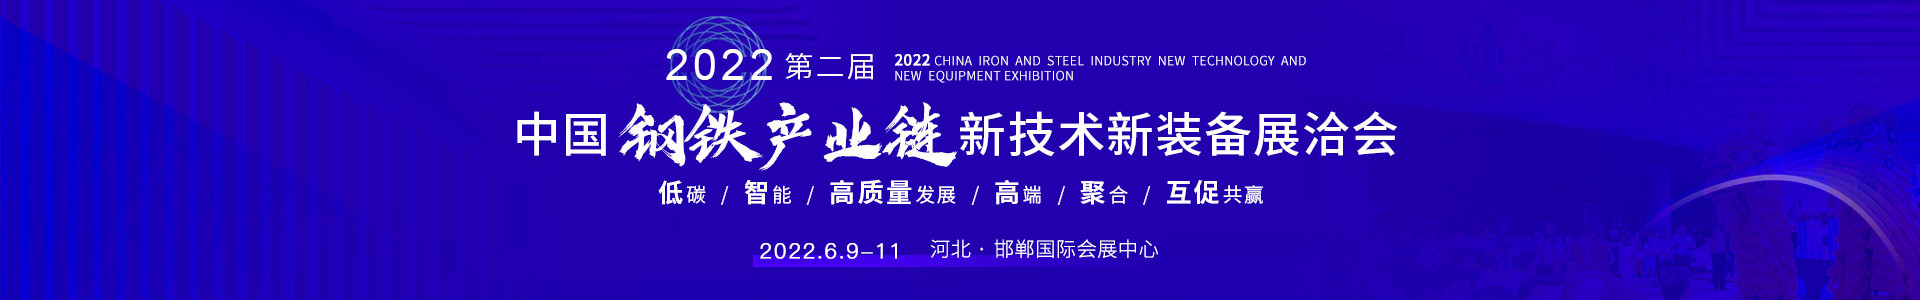 第二届中国钢铁产业链新技术新装备展洽会